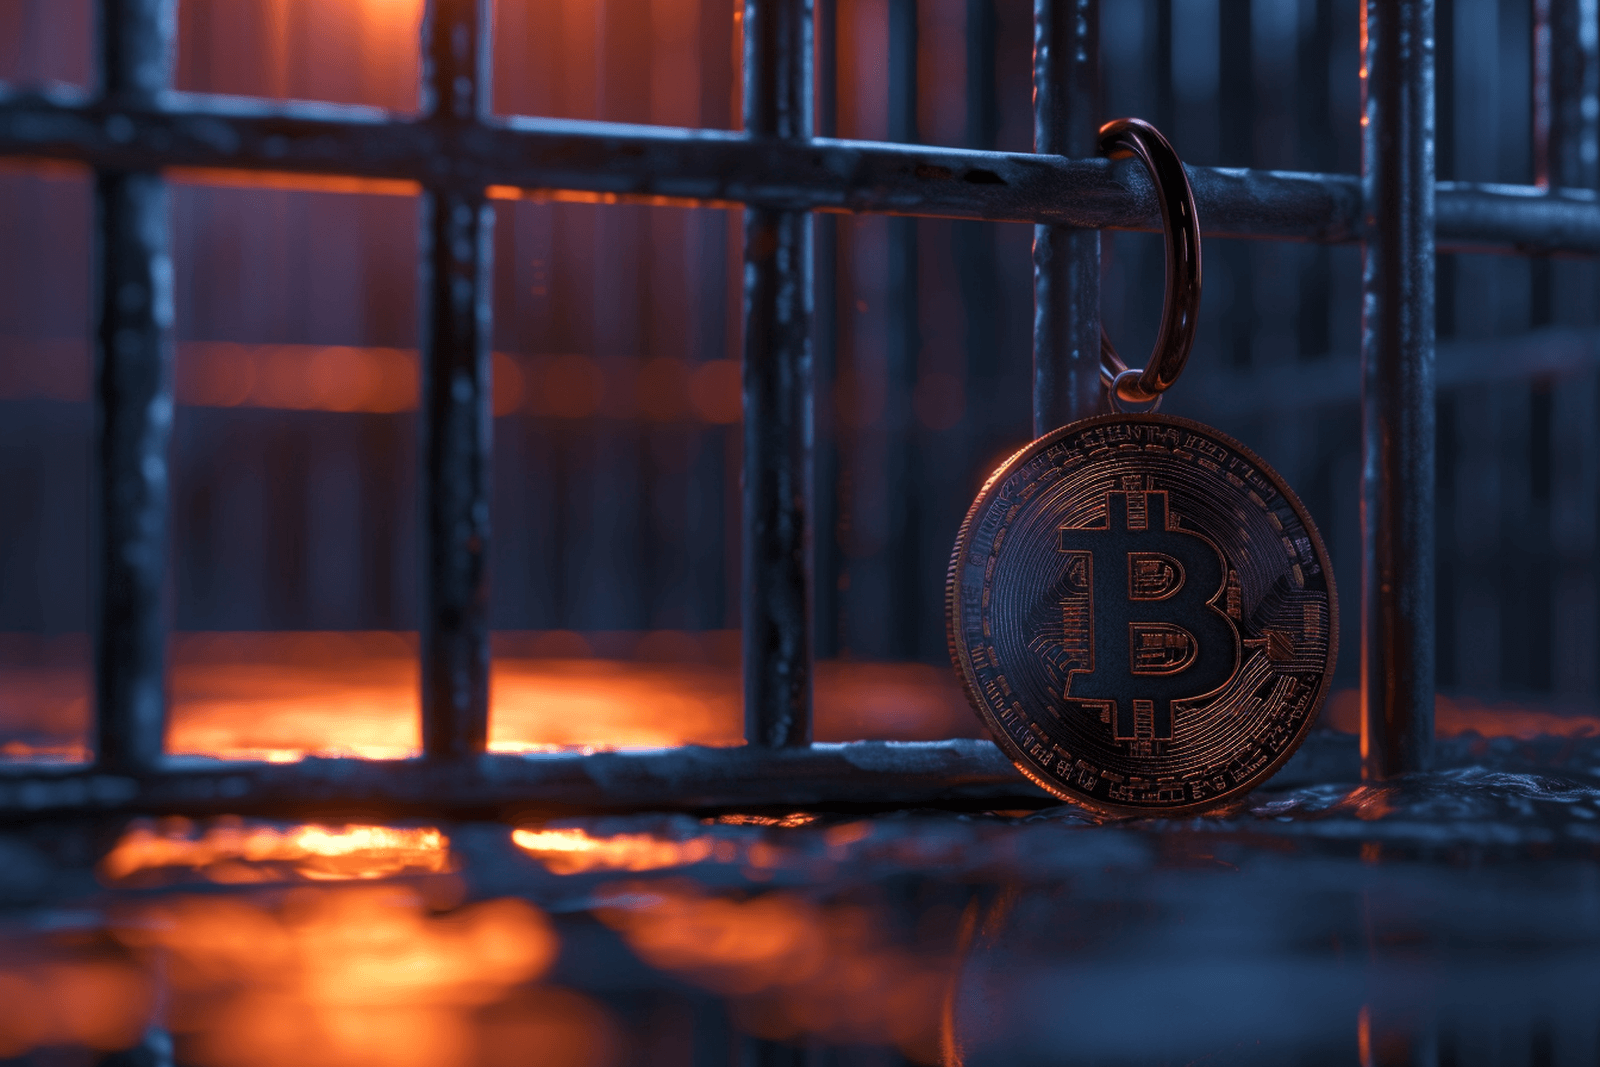 Bitcoin zamknięty w więzieniu